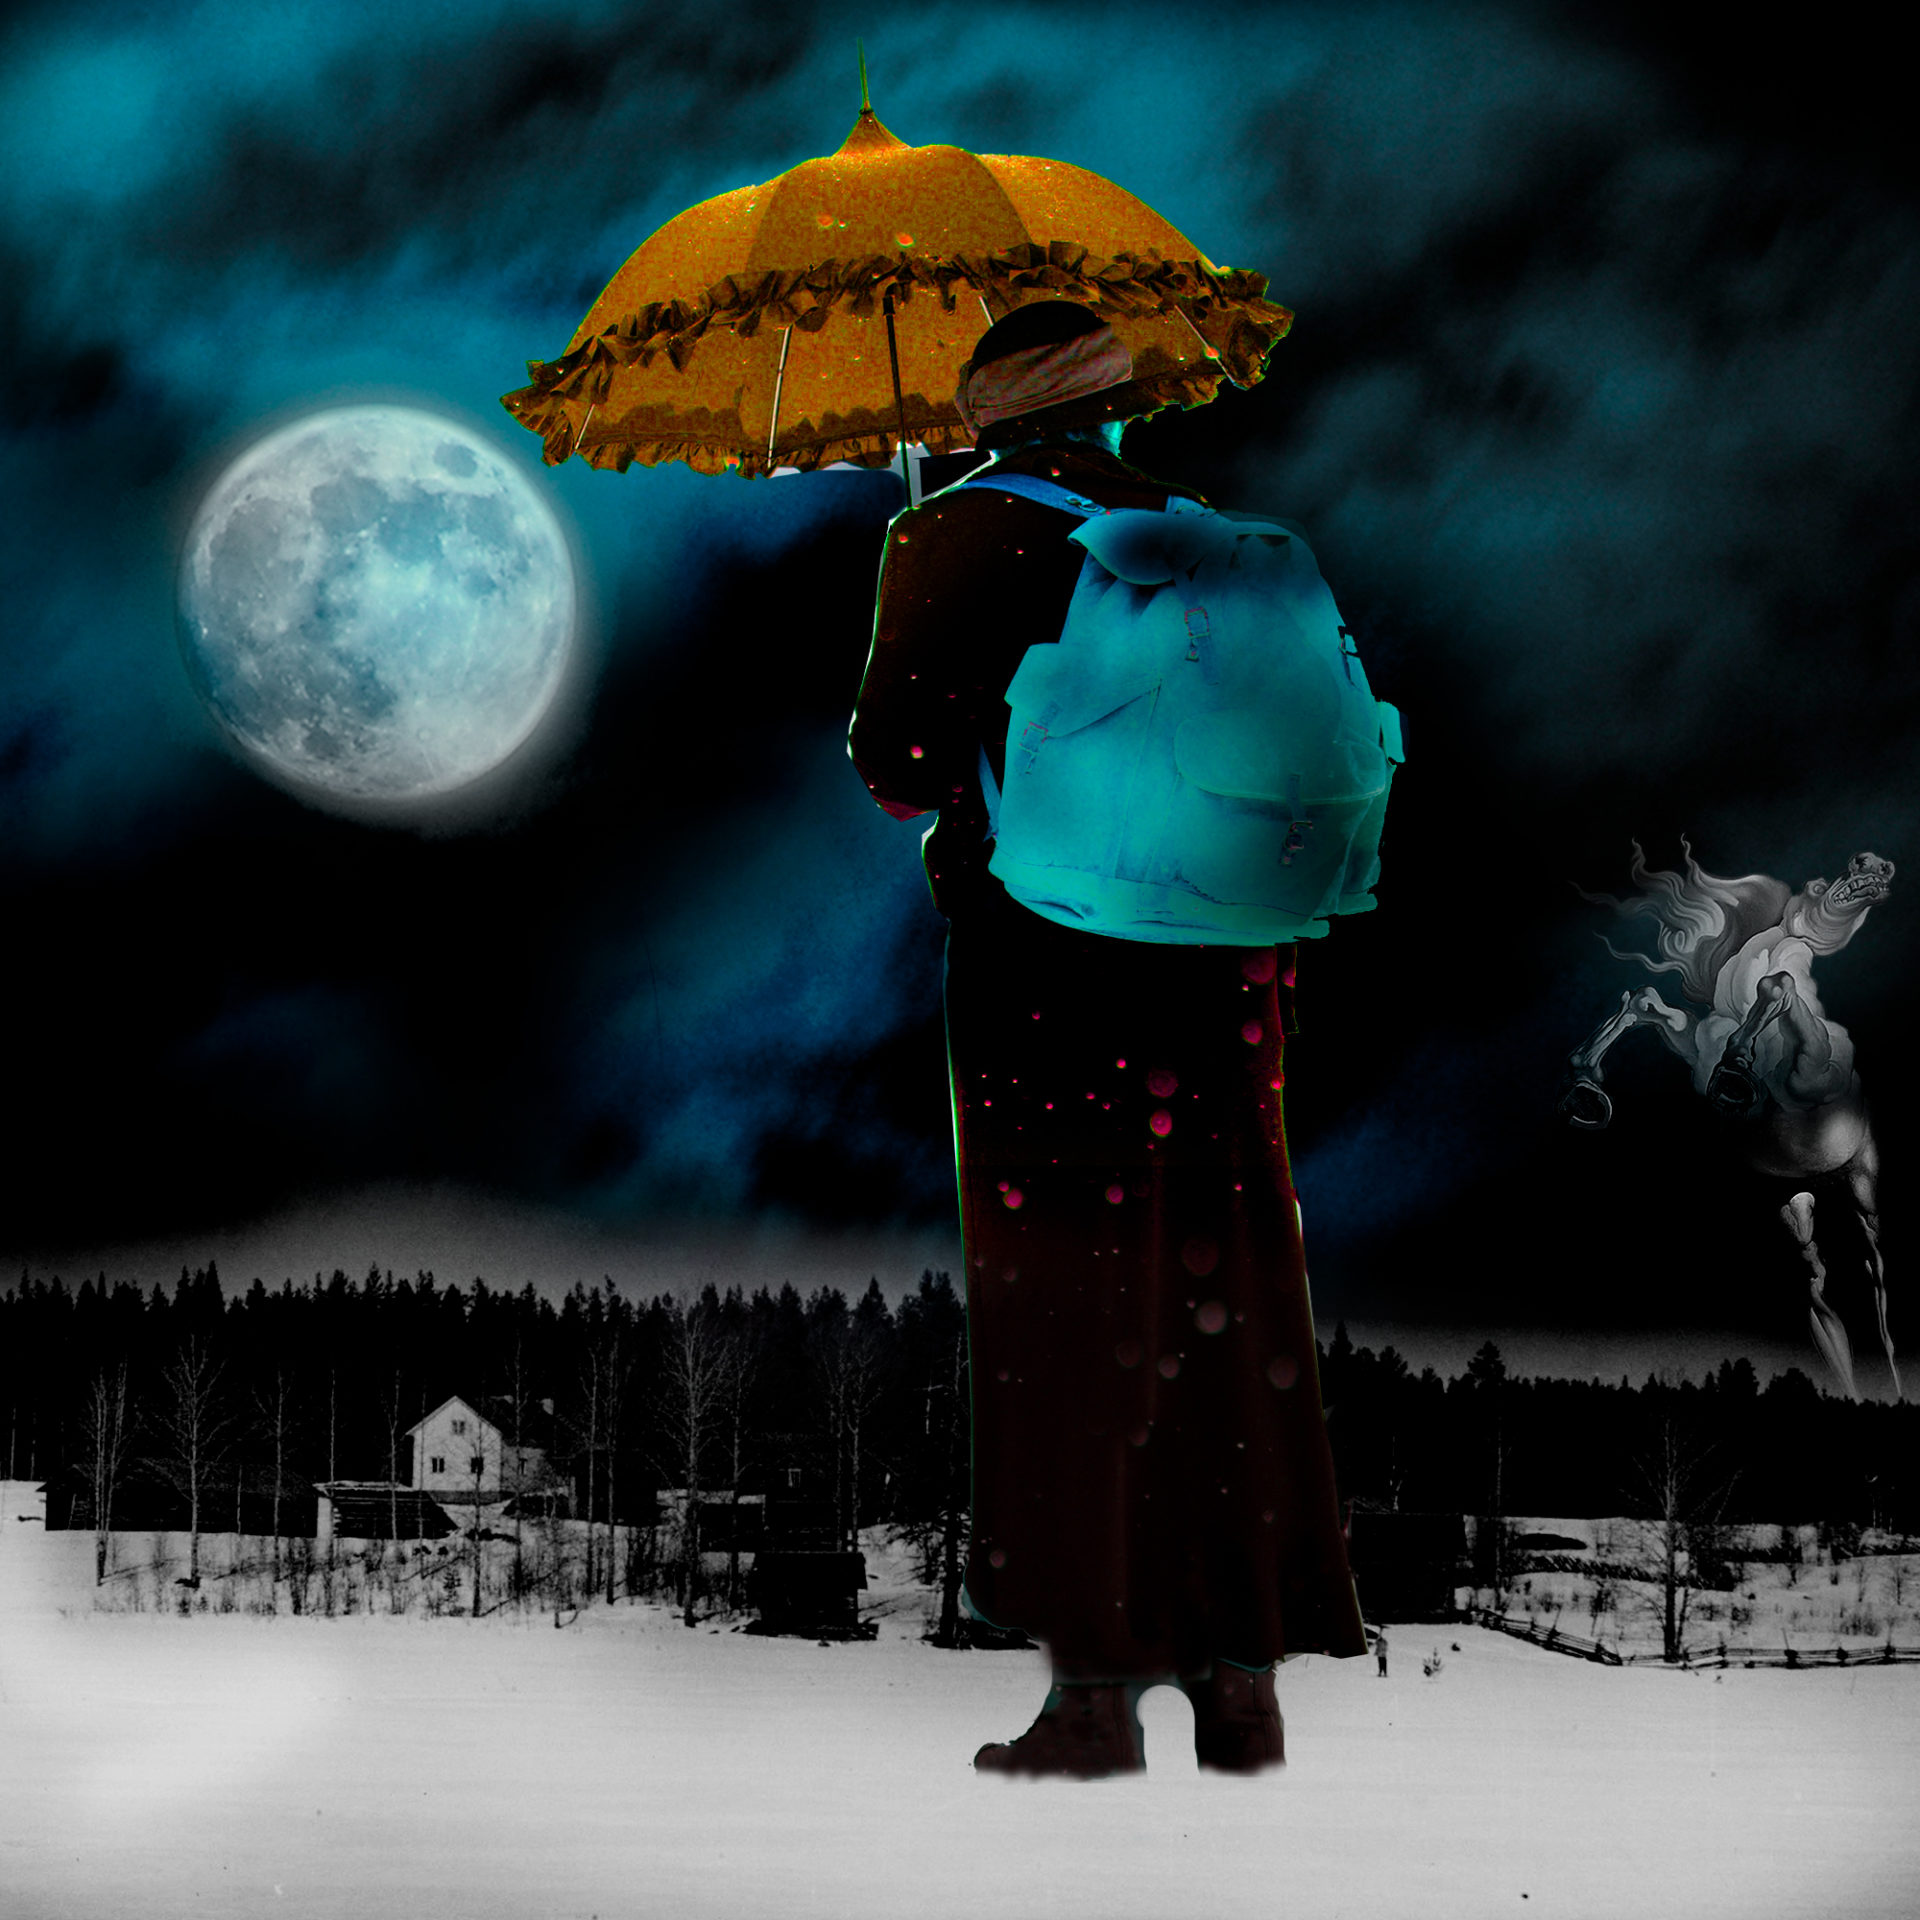 El influjo de la Luna II: Espejismo - Collage con paisaje nocturno con luna, una mujer y el caballo de Dalí. Loco Mundo Arte y Bohemia